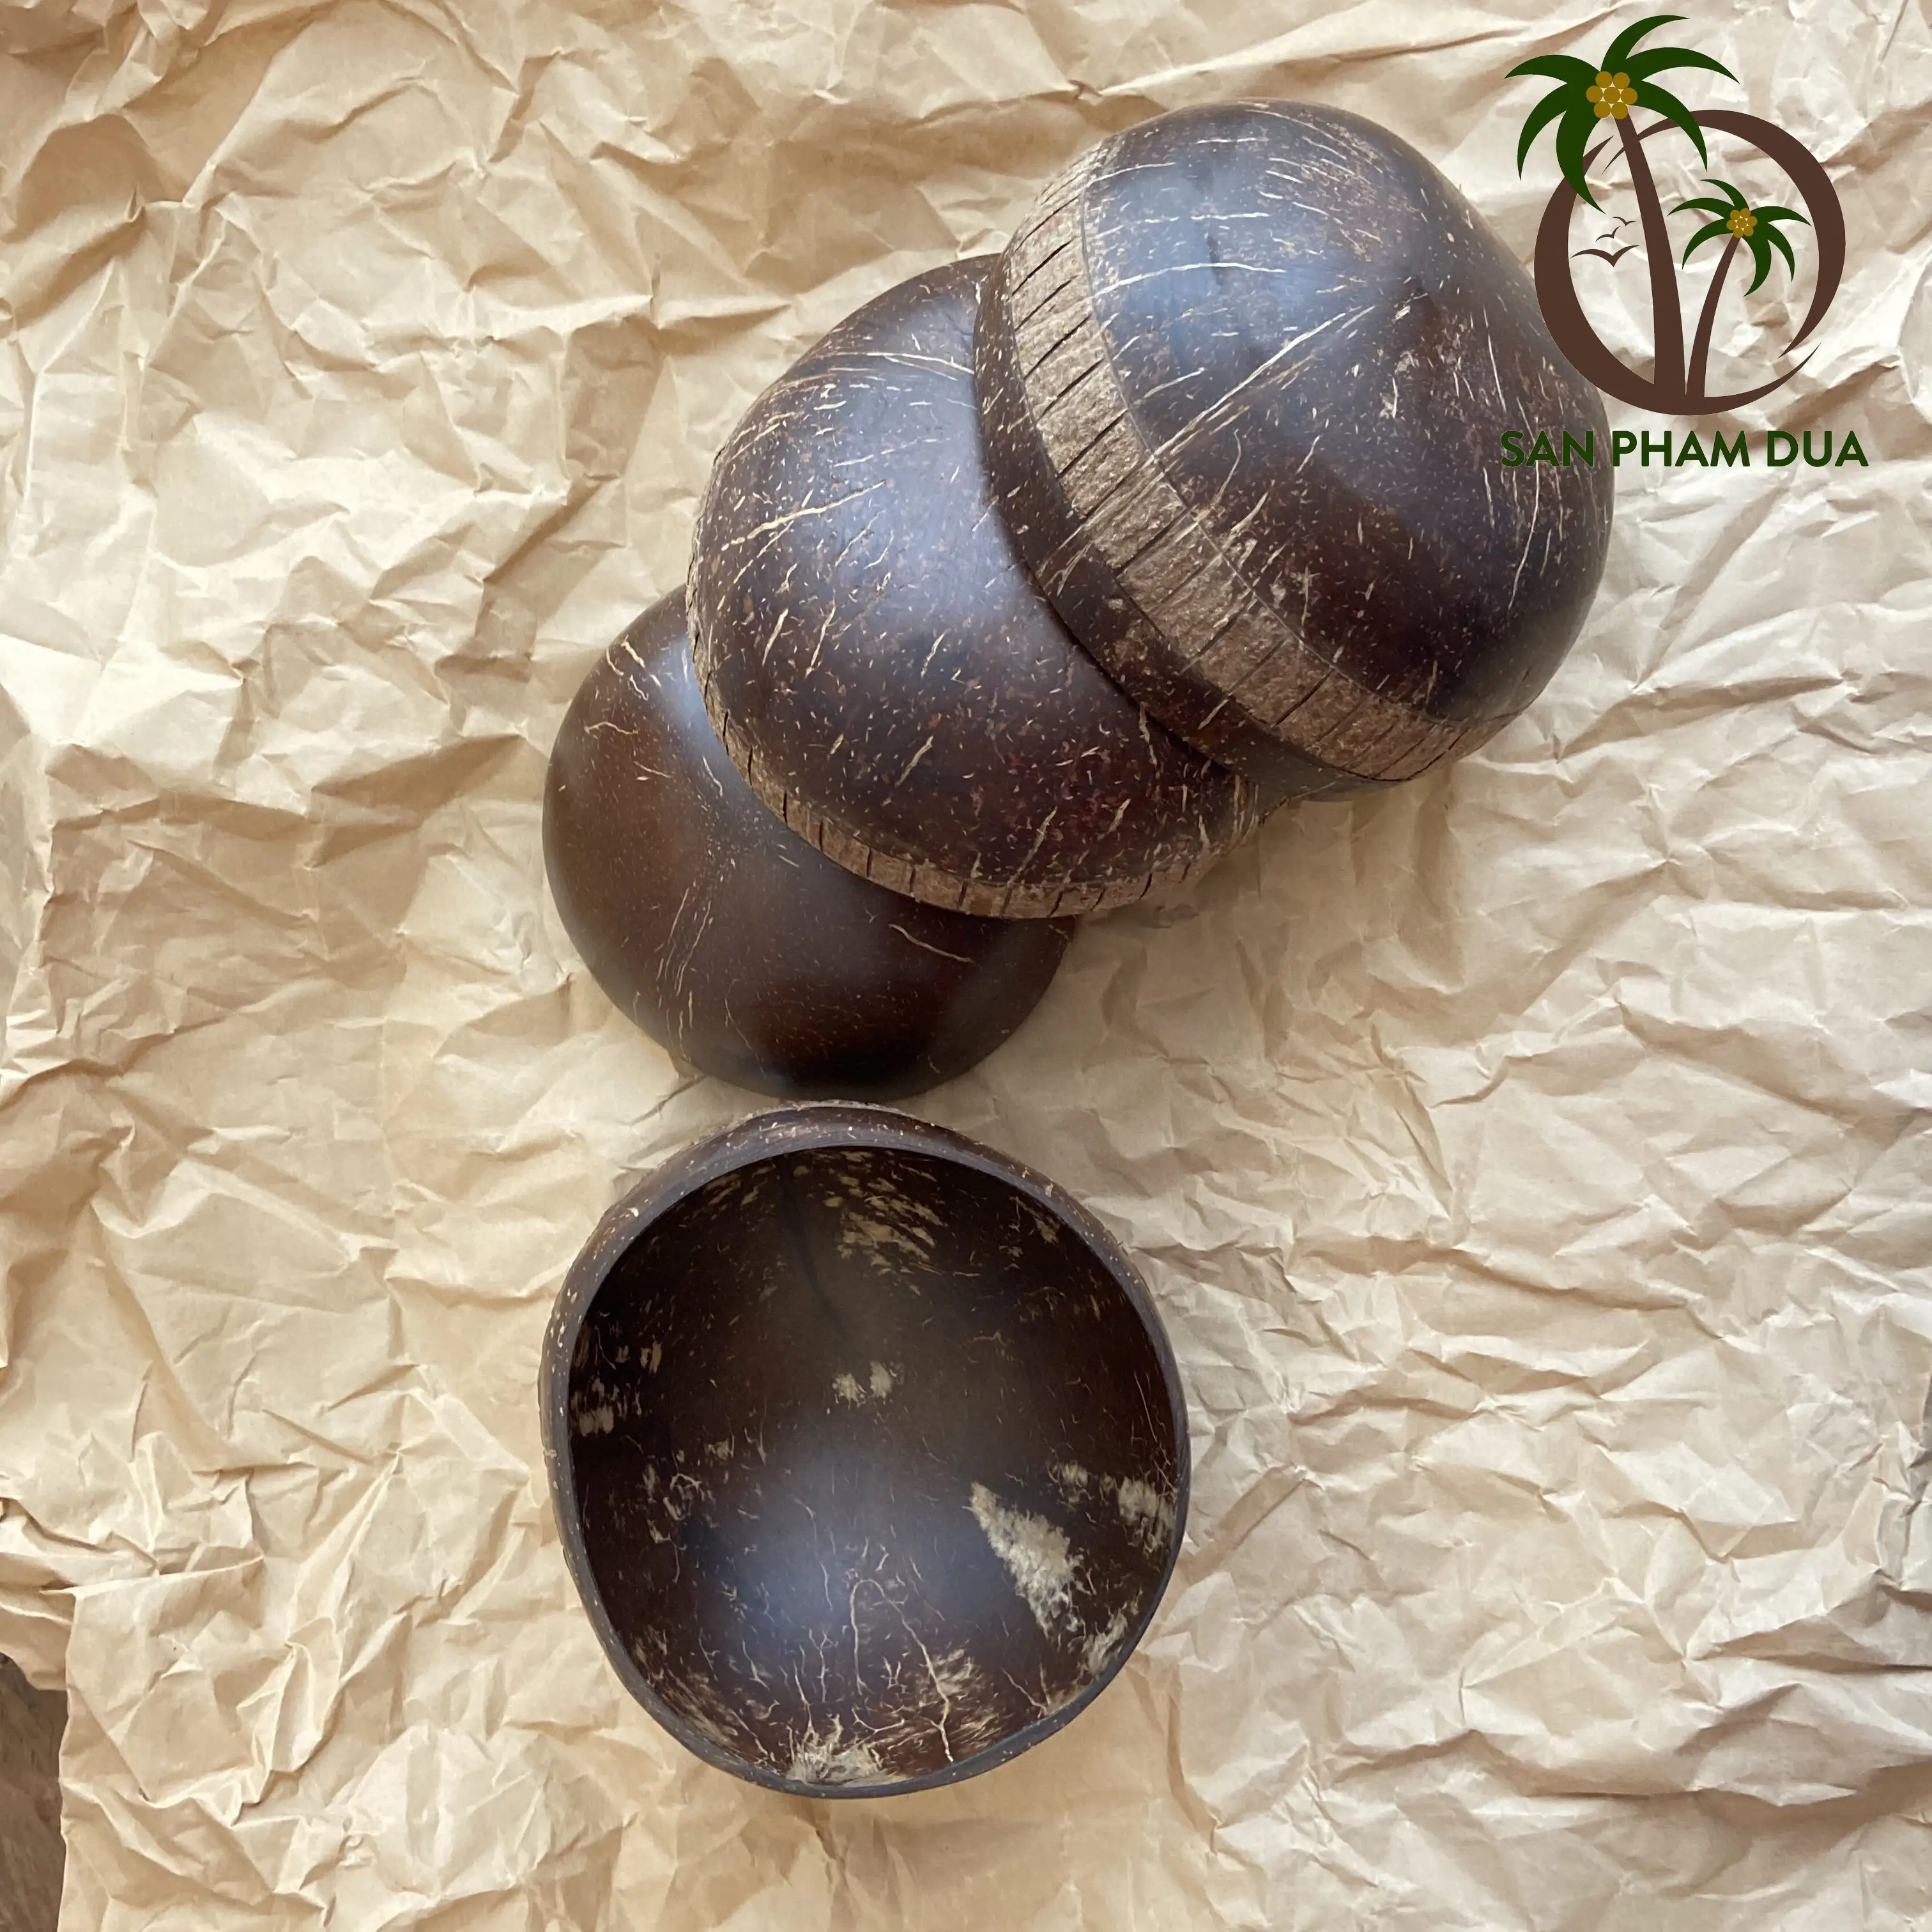 Mangkuk tempurung kelapa alami yang ramah lingkungan mangkuk mie Salad buah kelapa mangkuk kayu buatan tangan untuk bermerek COCO Eco